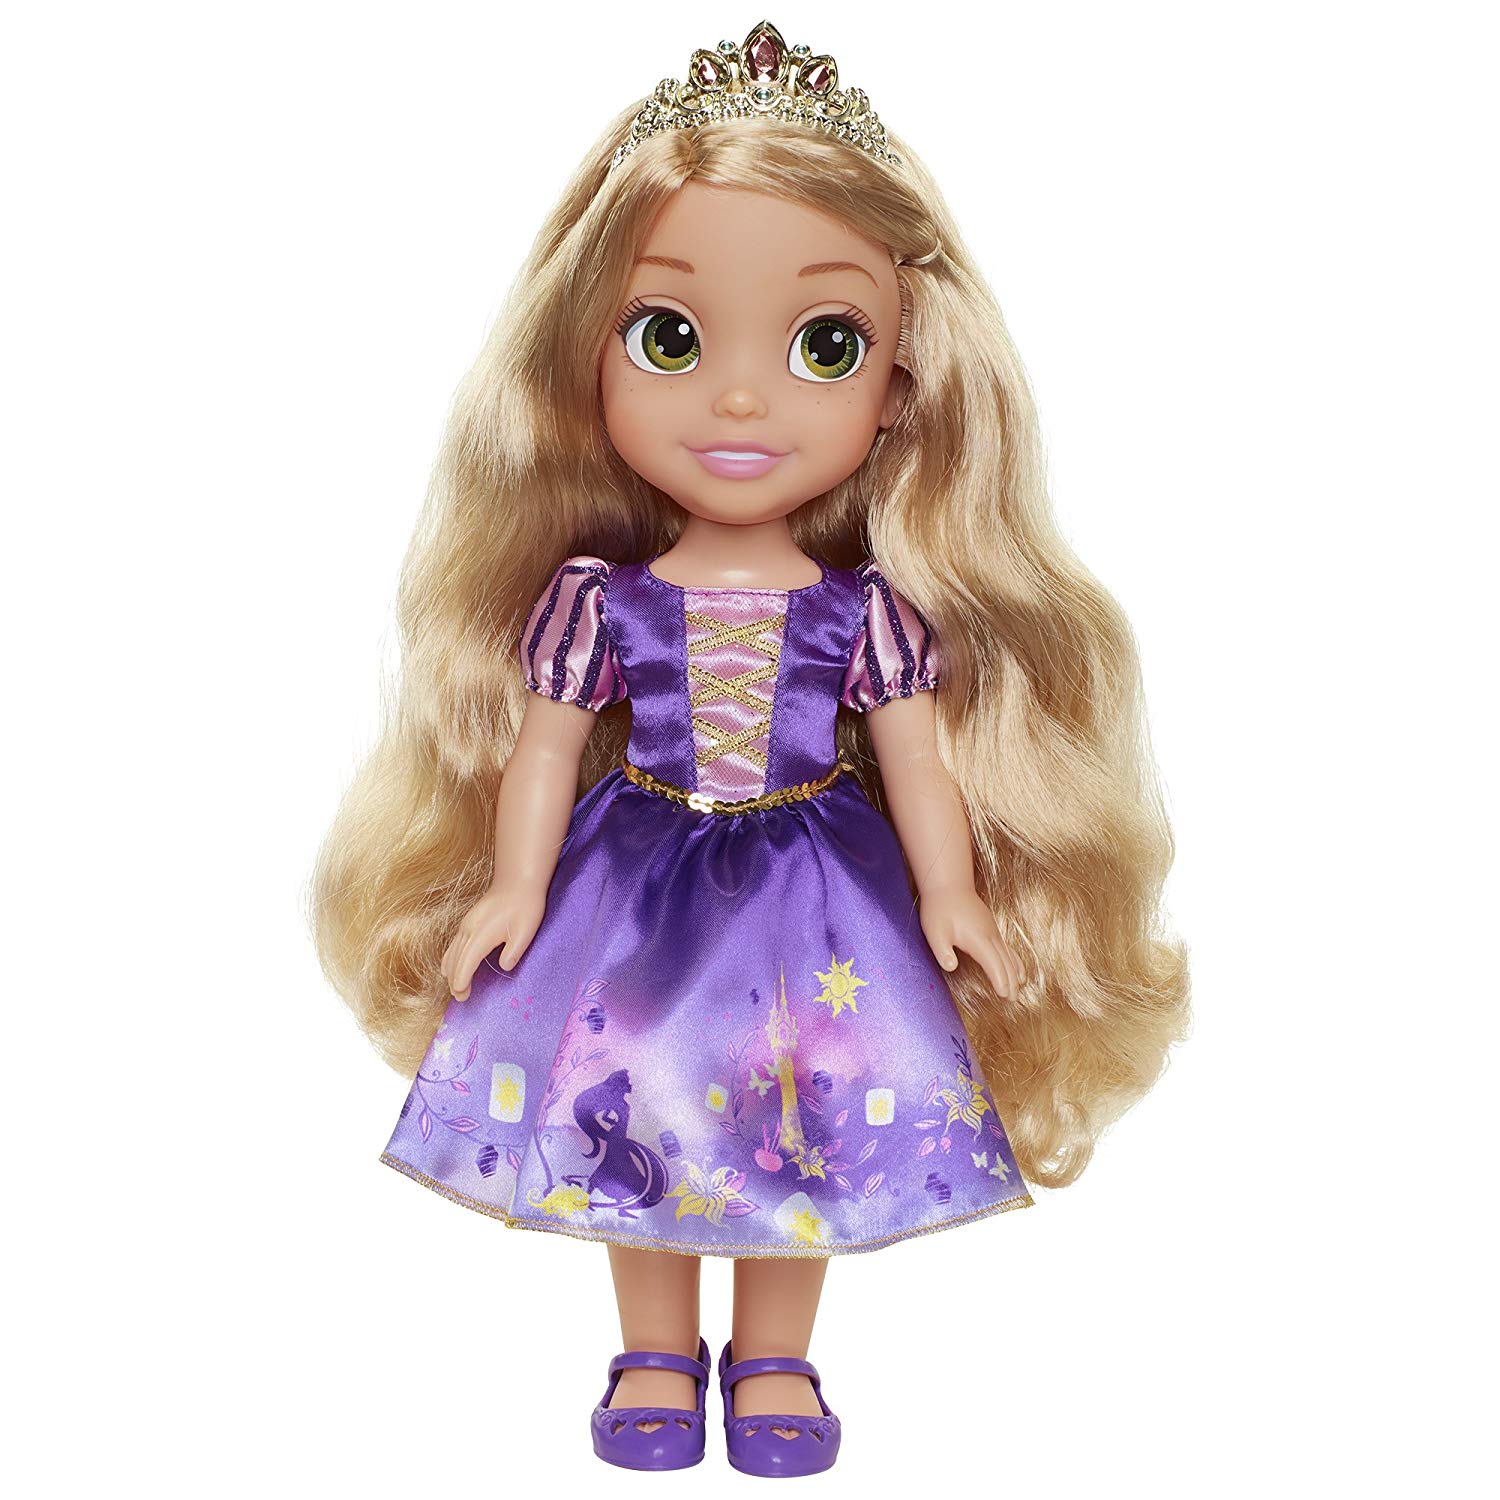 Shining At søge tilflugt Sæt tabellen op Køb Disney Prinsesser - Explore Your World - 35 cm Dukke - Rapunzel